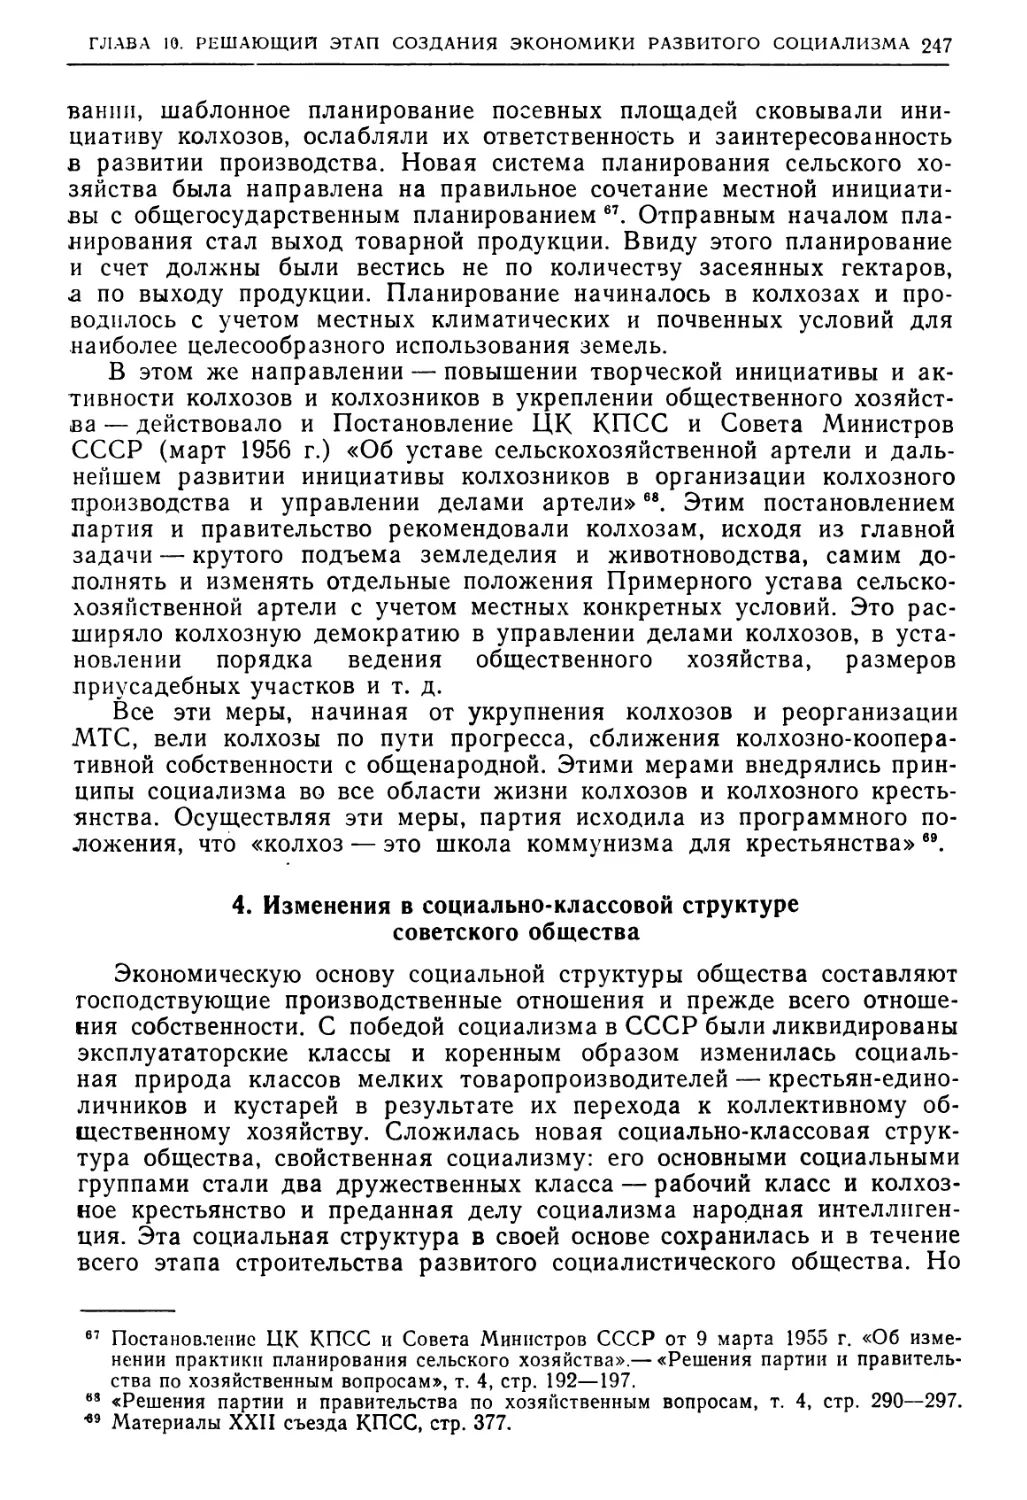 4. Изменения в социально-классовой структуре советского общества